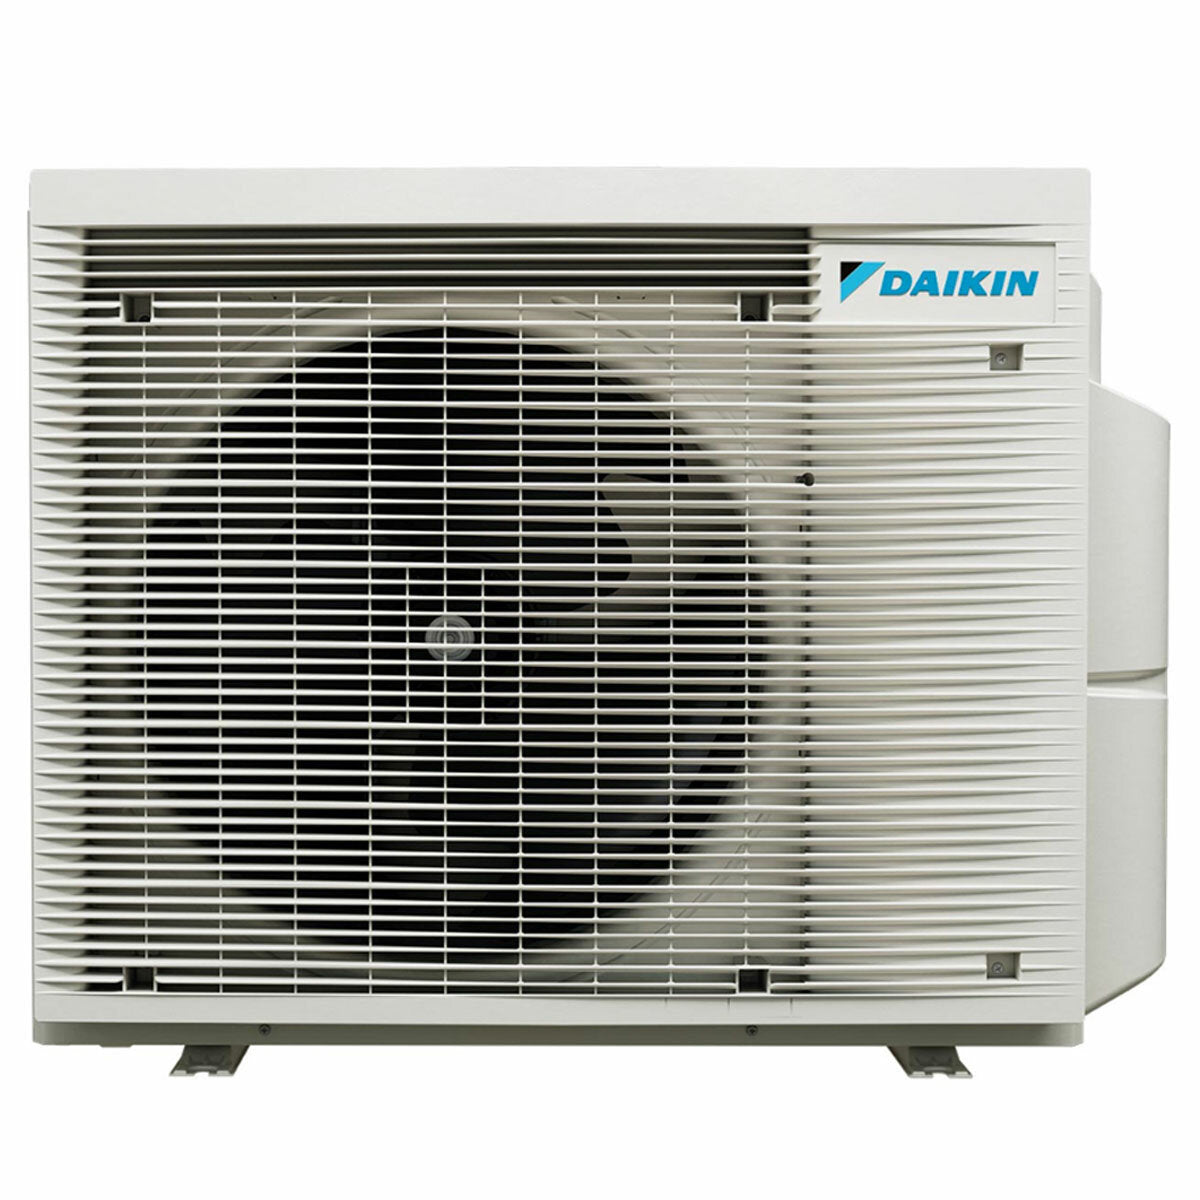 Daikin Emura 3 trial split air conditioner 7000+7000+18000 BTU inverter A+ wifi outdoor unit 6.8 kW Silver